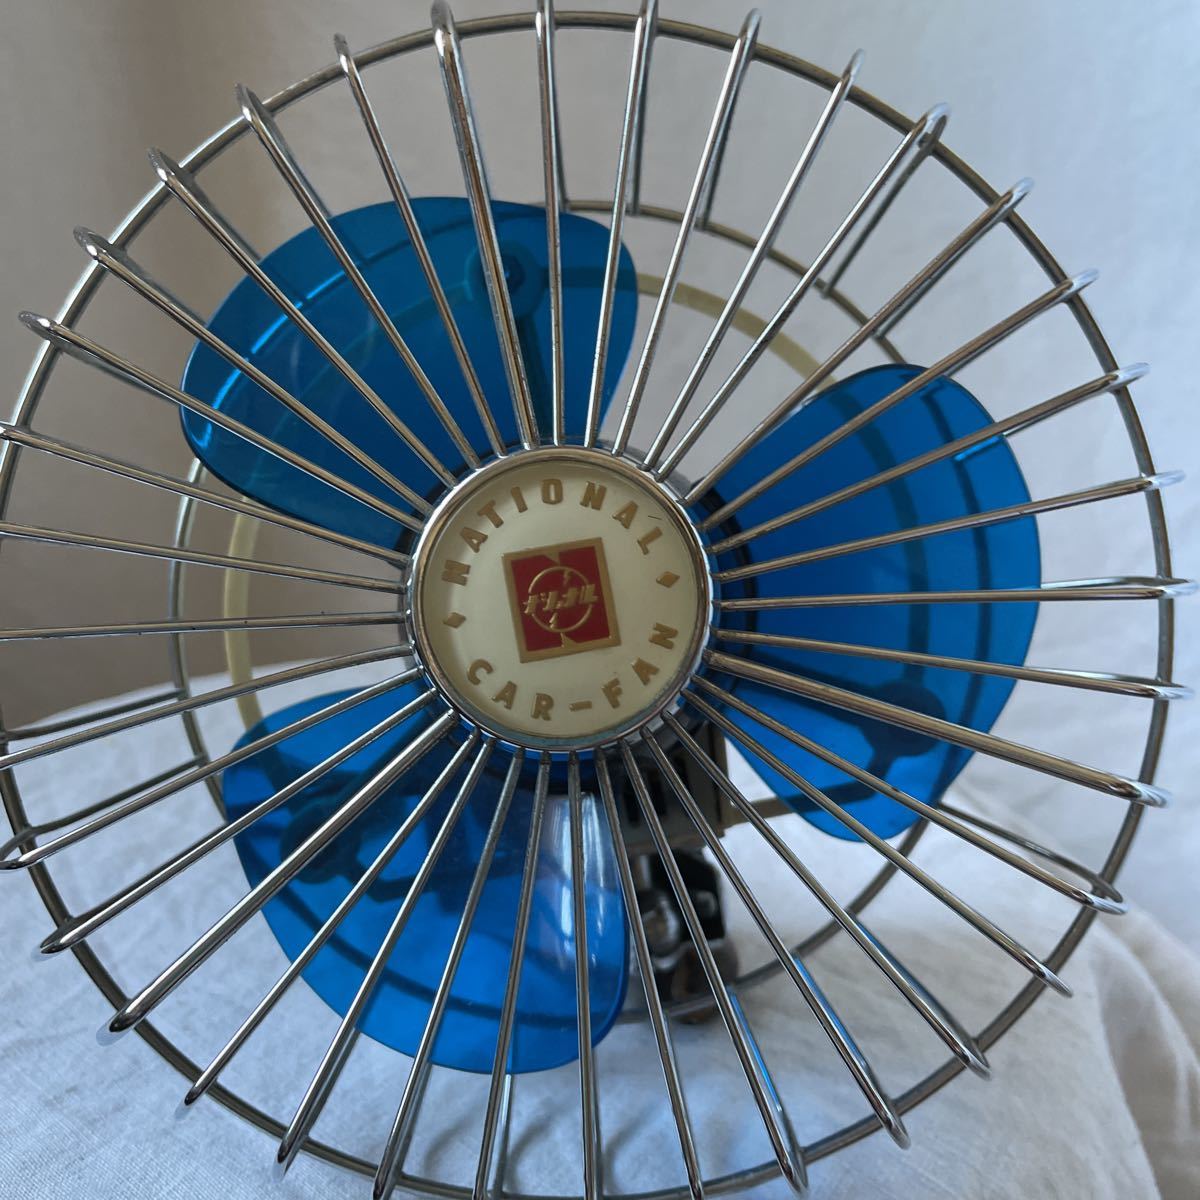  Showa Retro that time thing antique electric fan National car fan car electric fan 